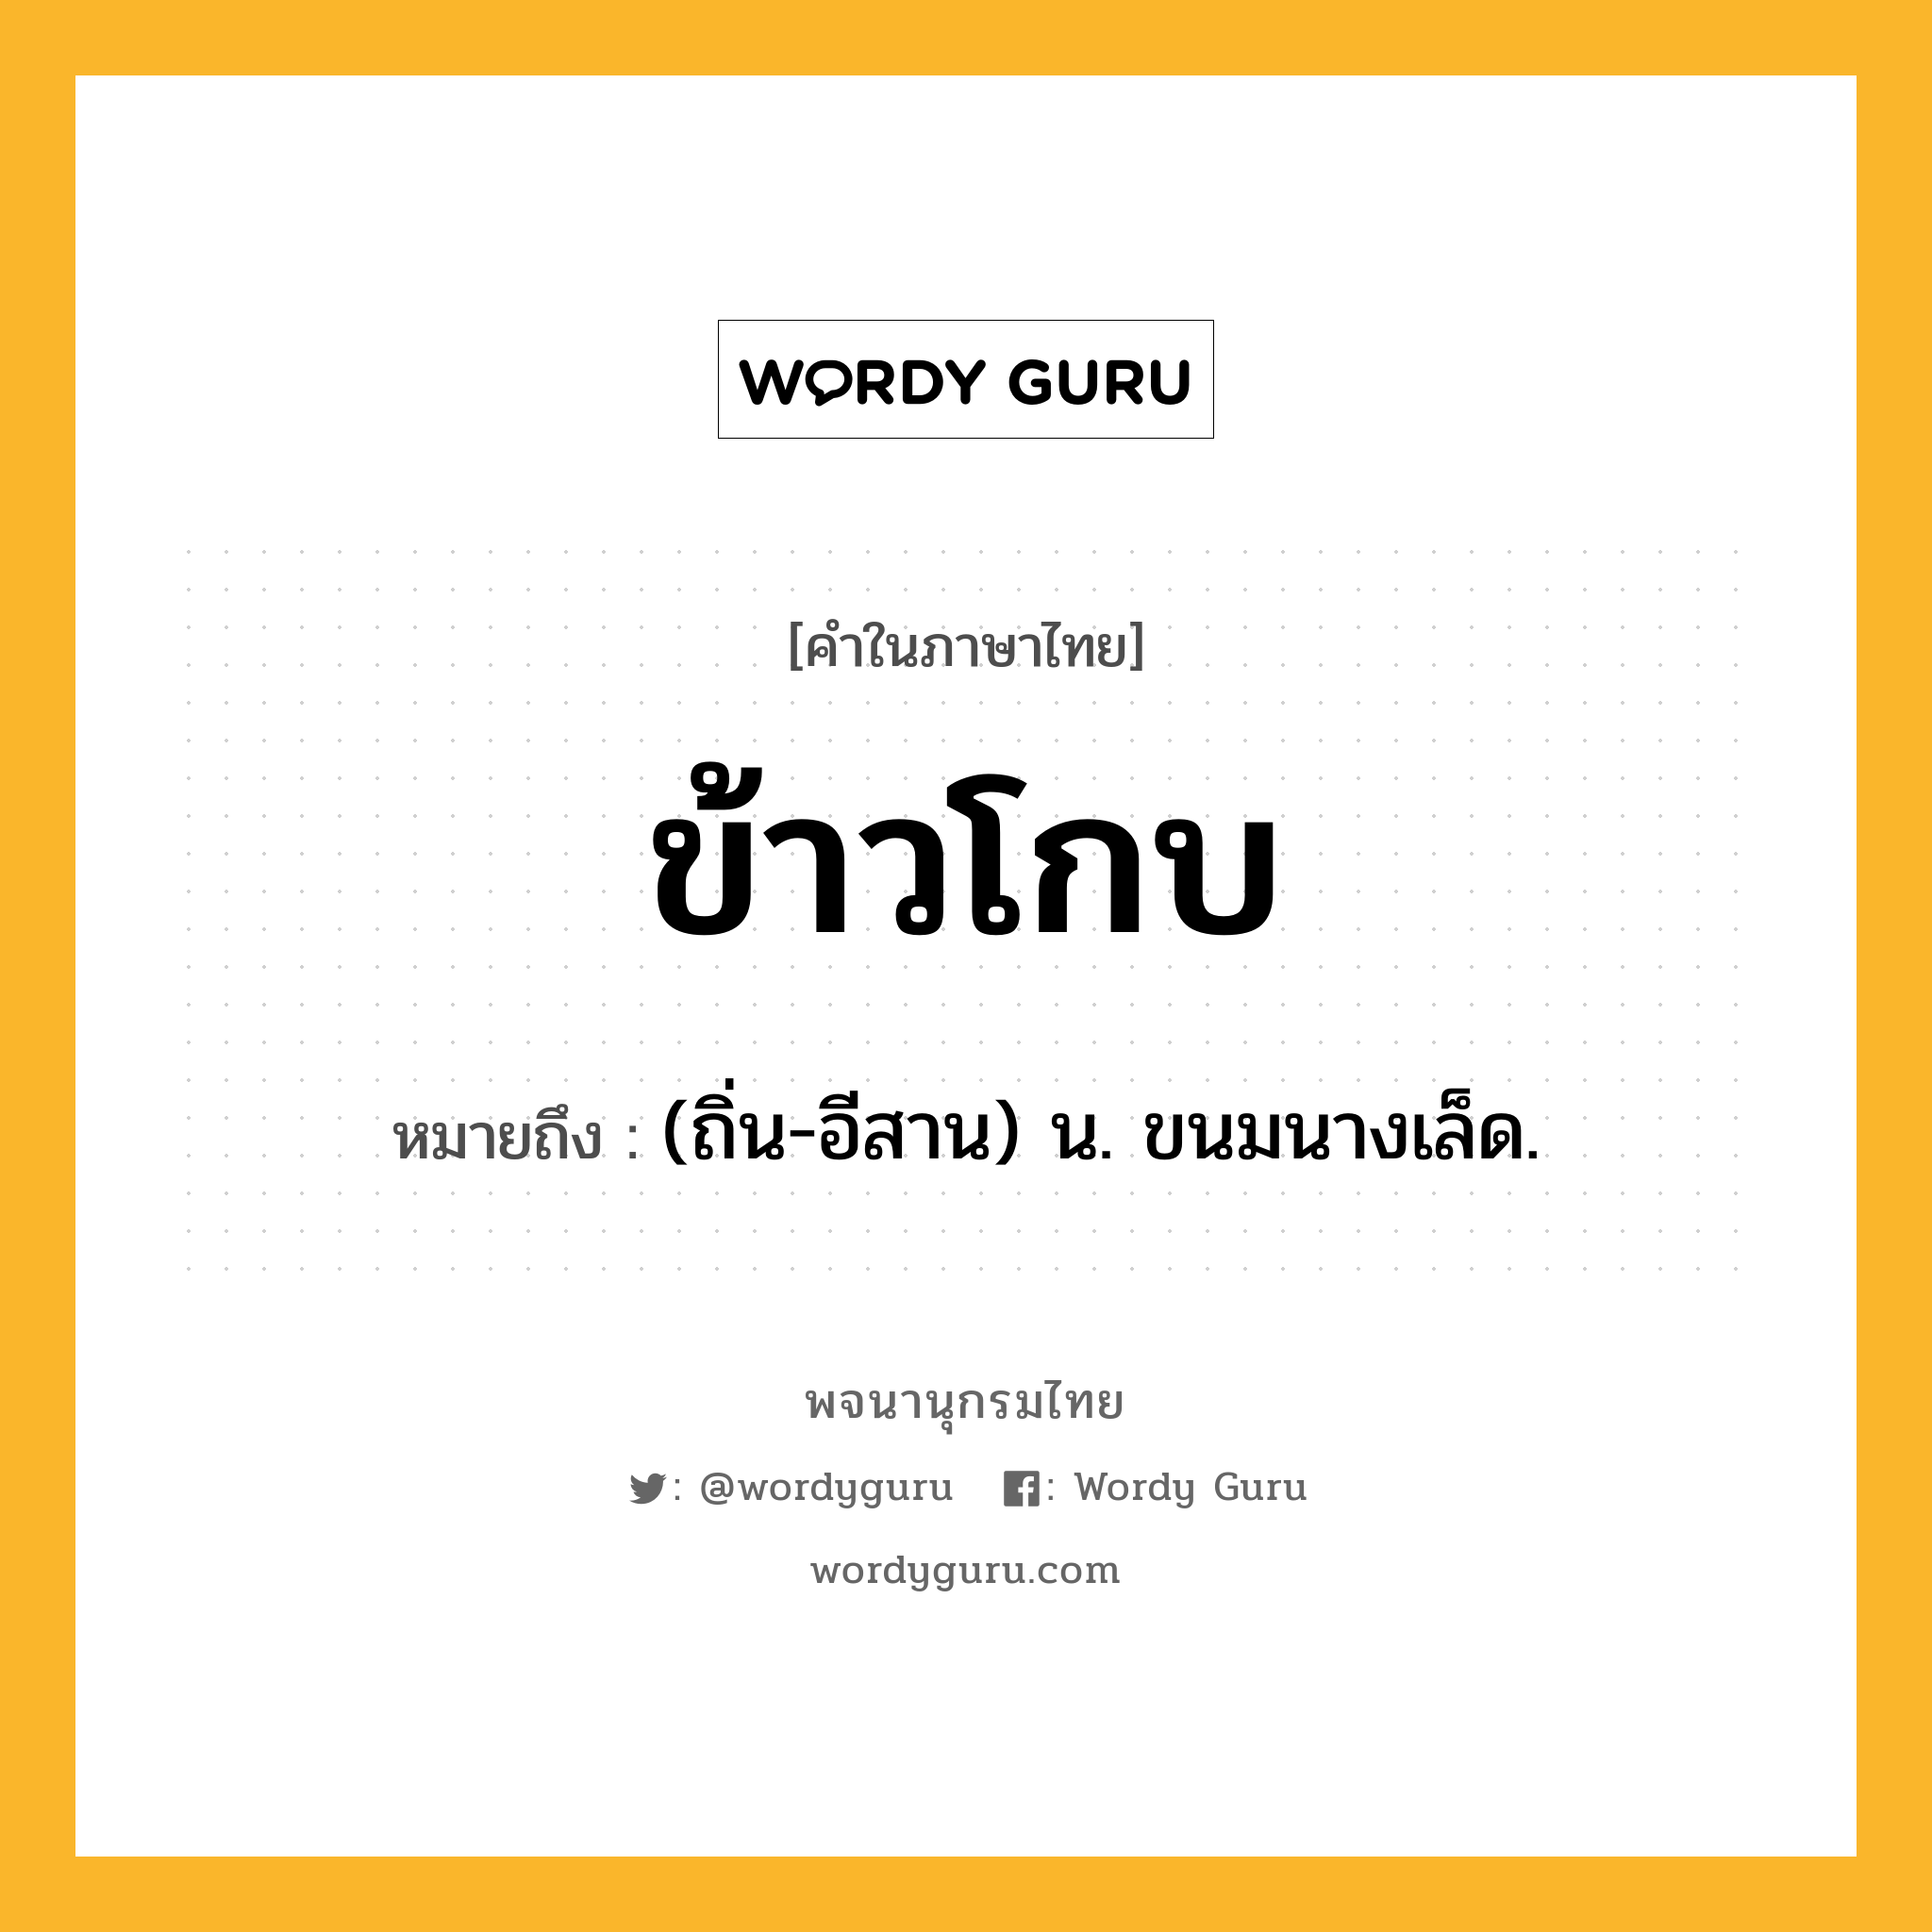 ข้าวโกบ ความหมาย หมายถึงอะไร?, คำในภาษาไทย ข้าวโกบ หมายถึง (ถิ่น-อีสาน) น. ขนมนางเล็ด.